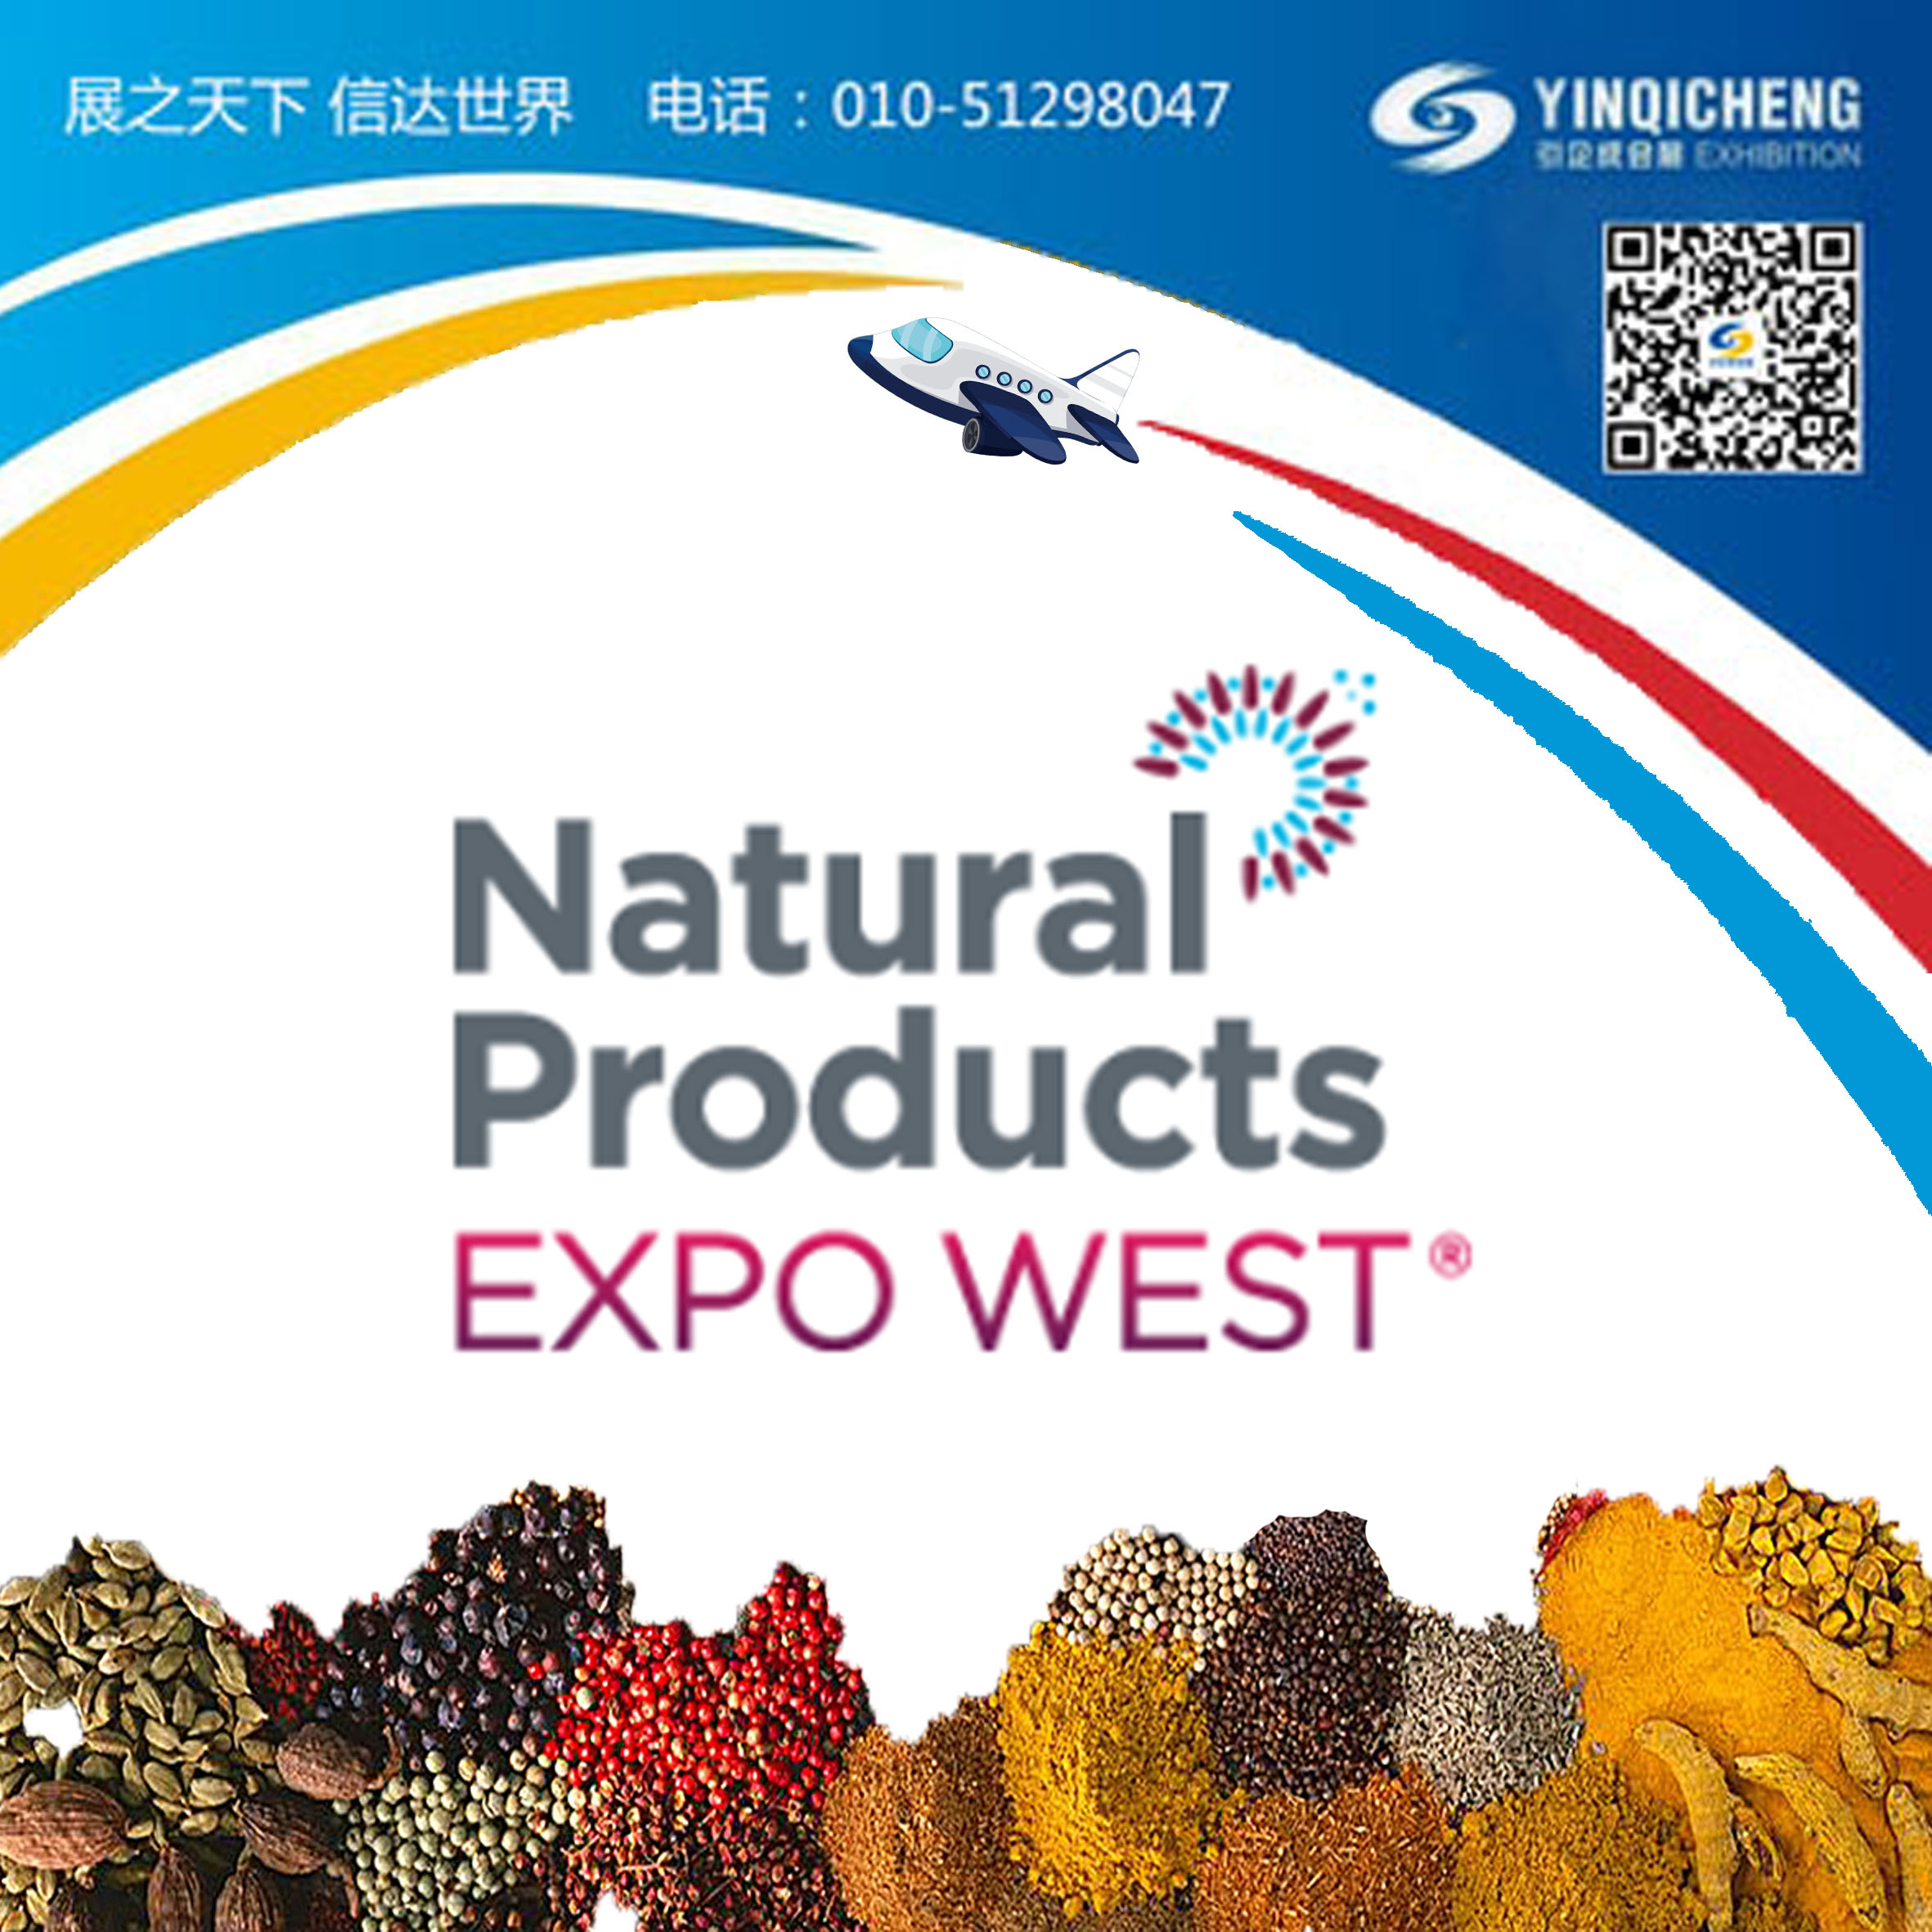 2021年美西保健展  Natural Products EXPO WEST